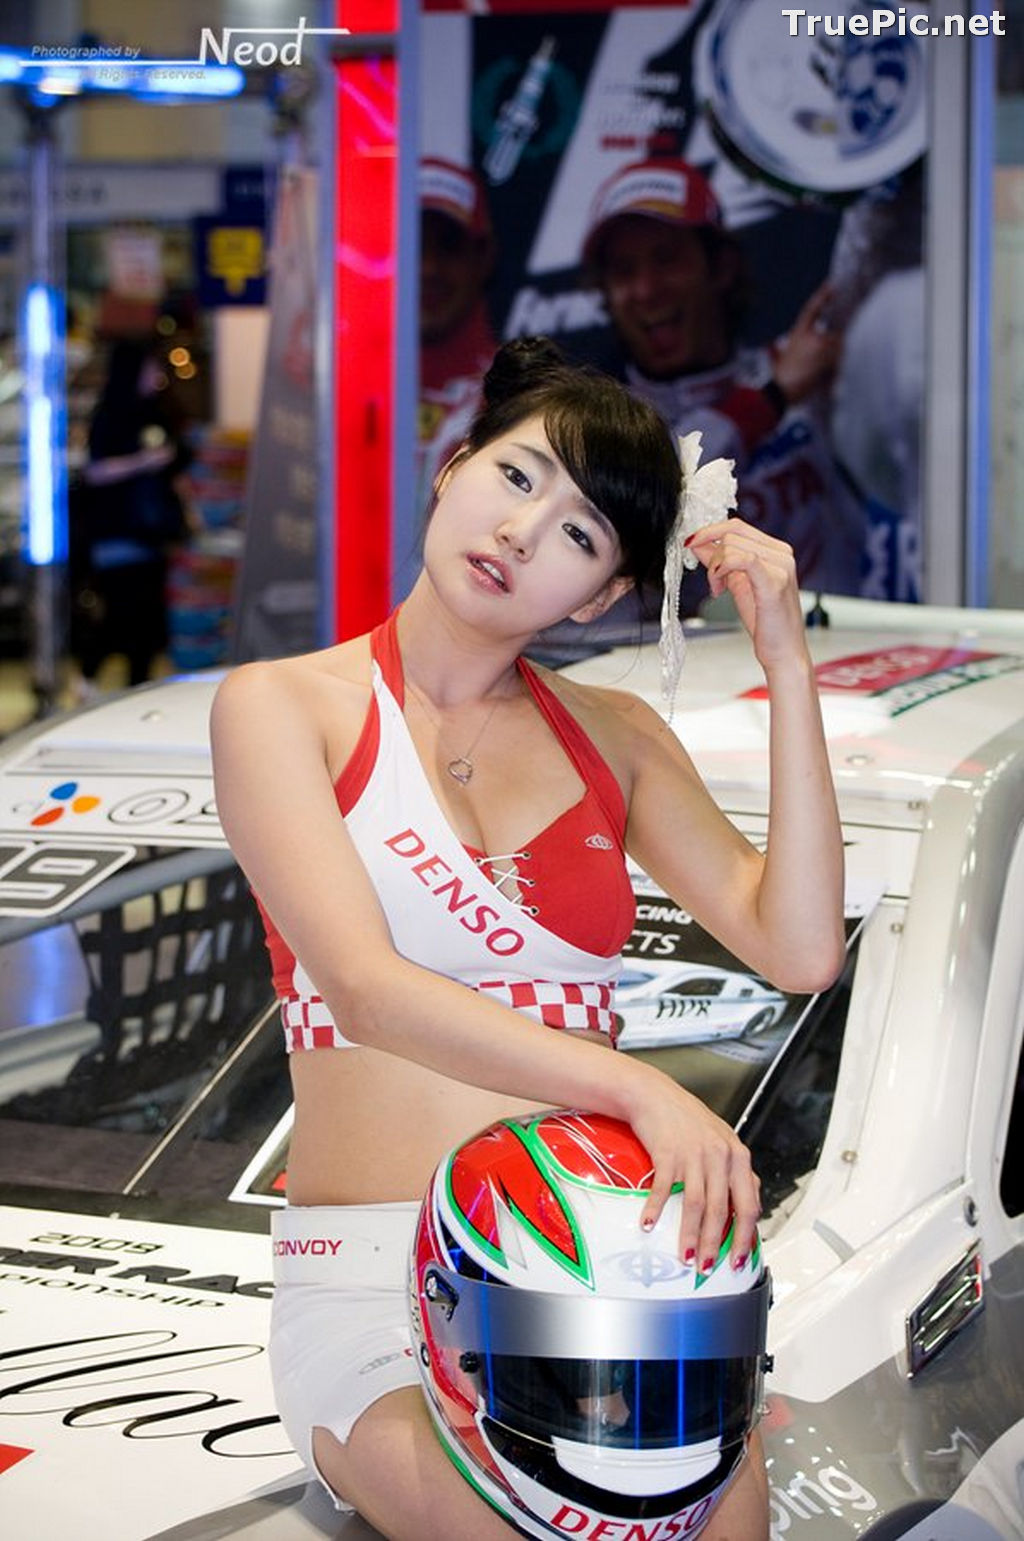 Image Best Beautiful Images Of Korean Racing Queen Han Ga Eun #4 - TruePic.net - Picture-42